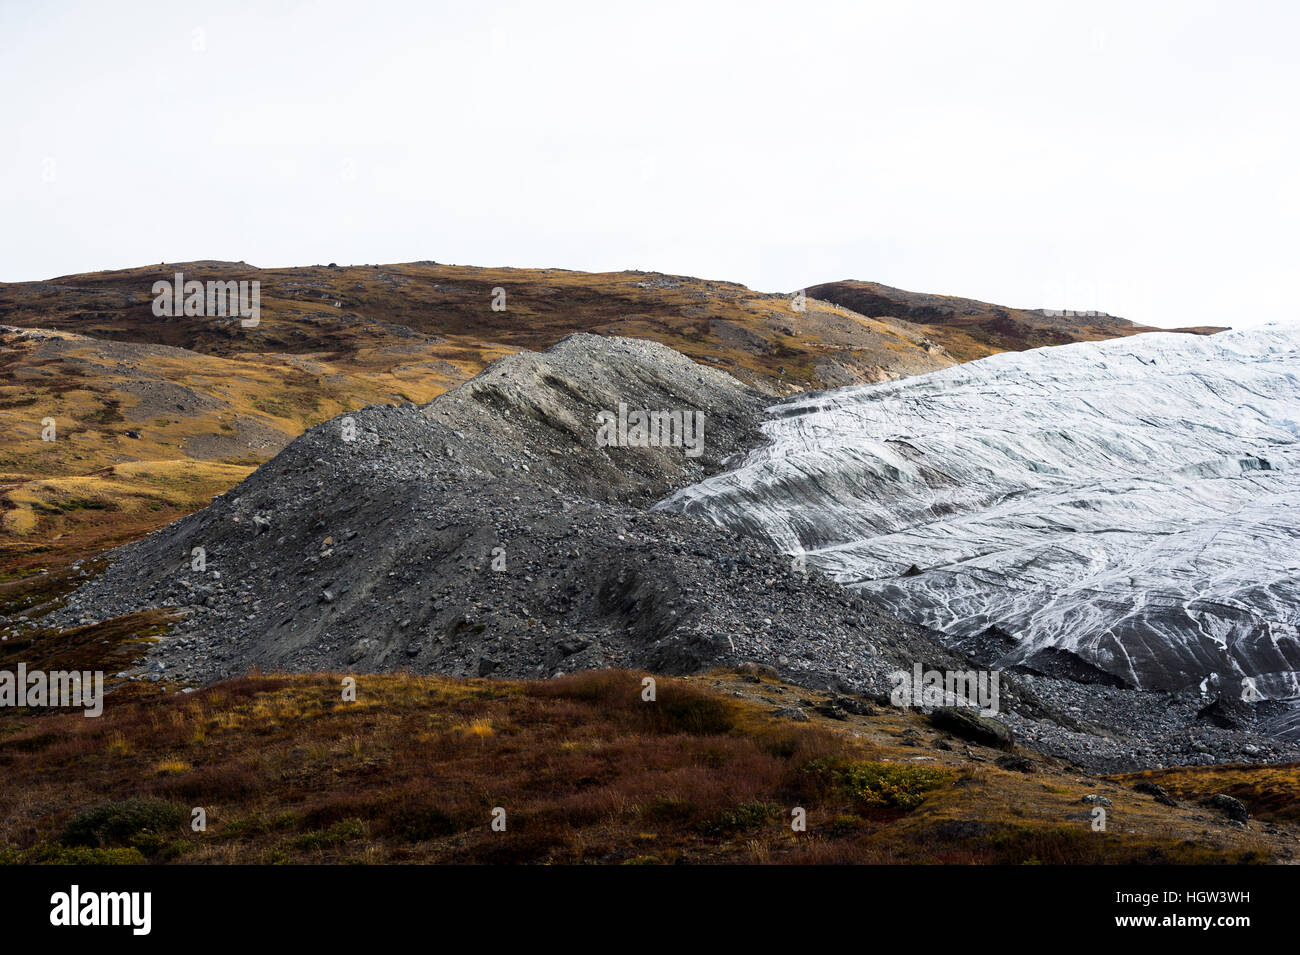 Un montón de rocas y restos de limo depositado por el borde de un glaciar. Foto de stock